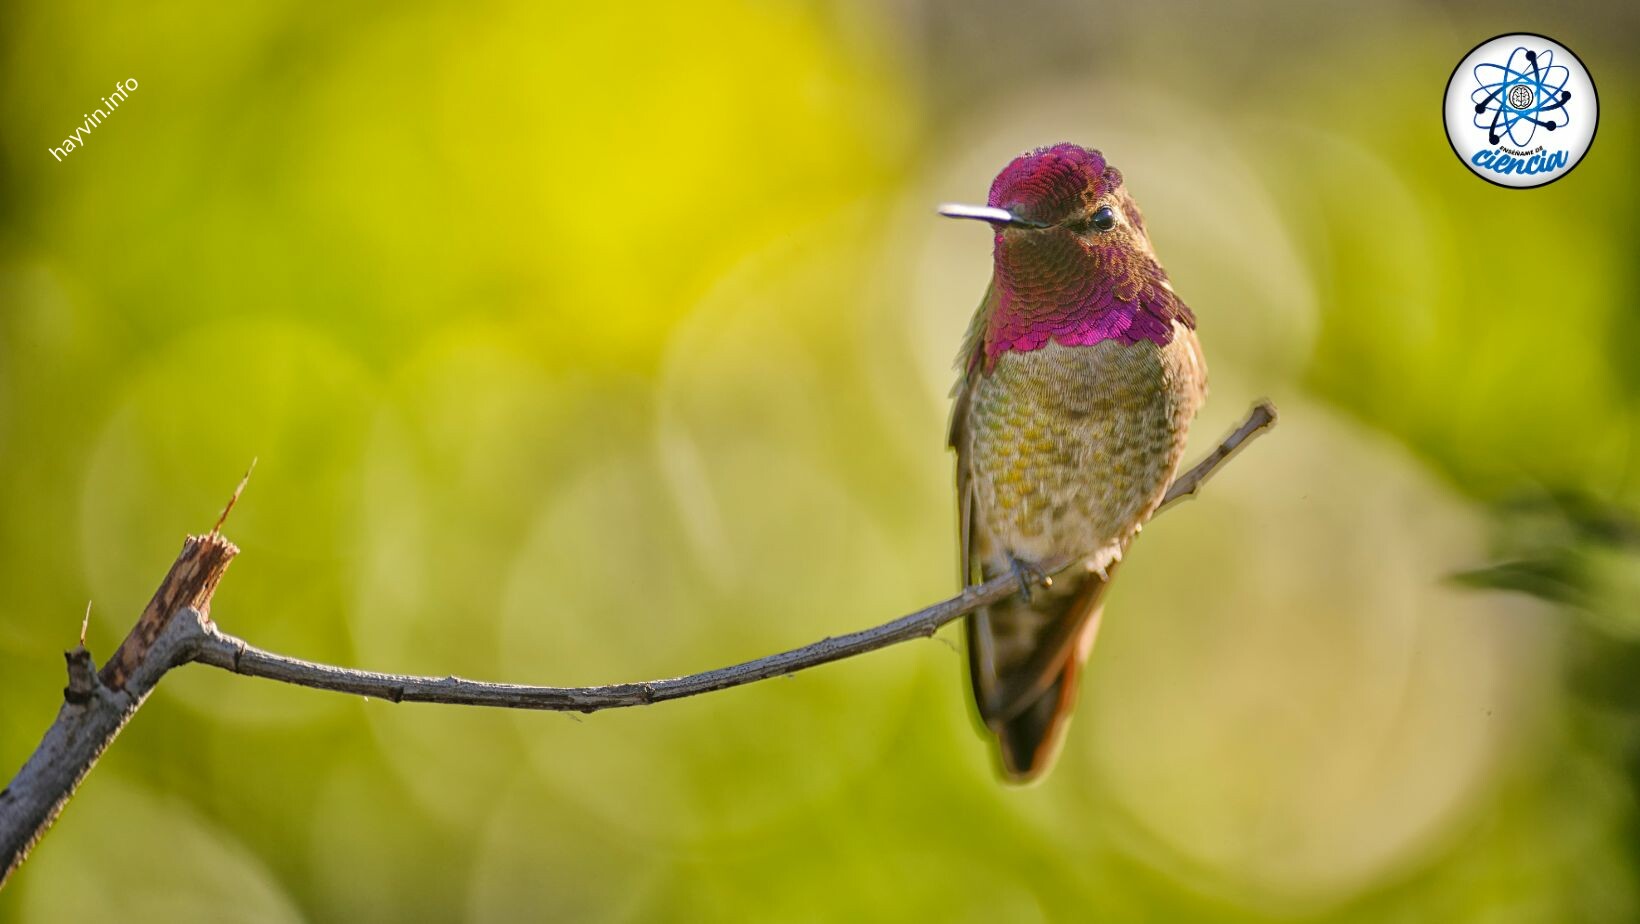 Ismerje meg a jelentését és fontosságát egy kolibri látogatásáról a kertben